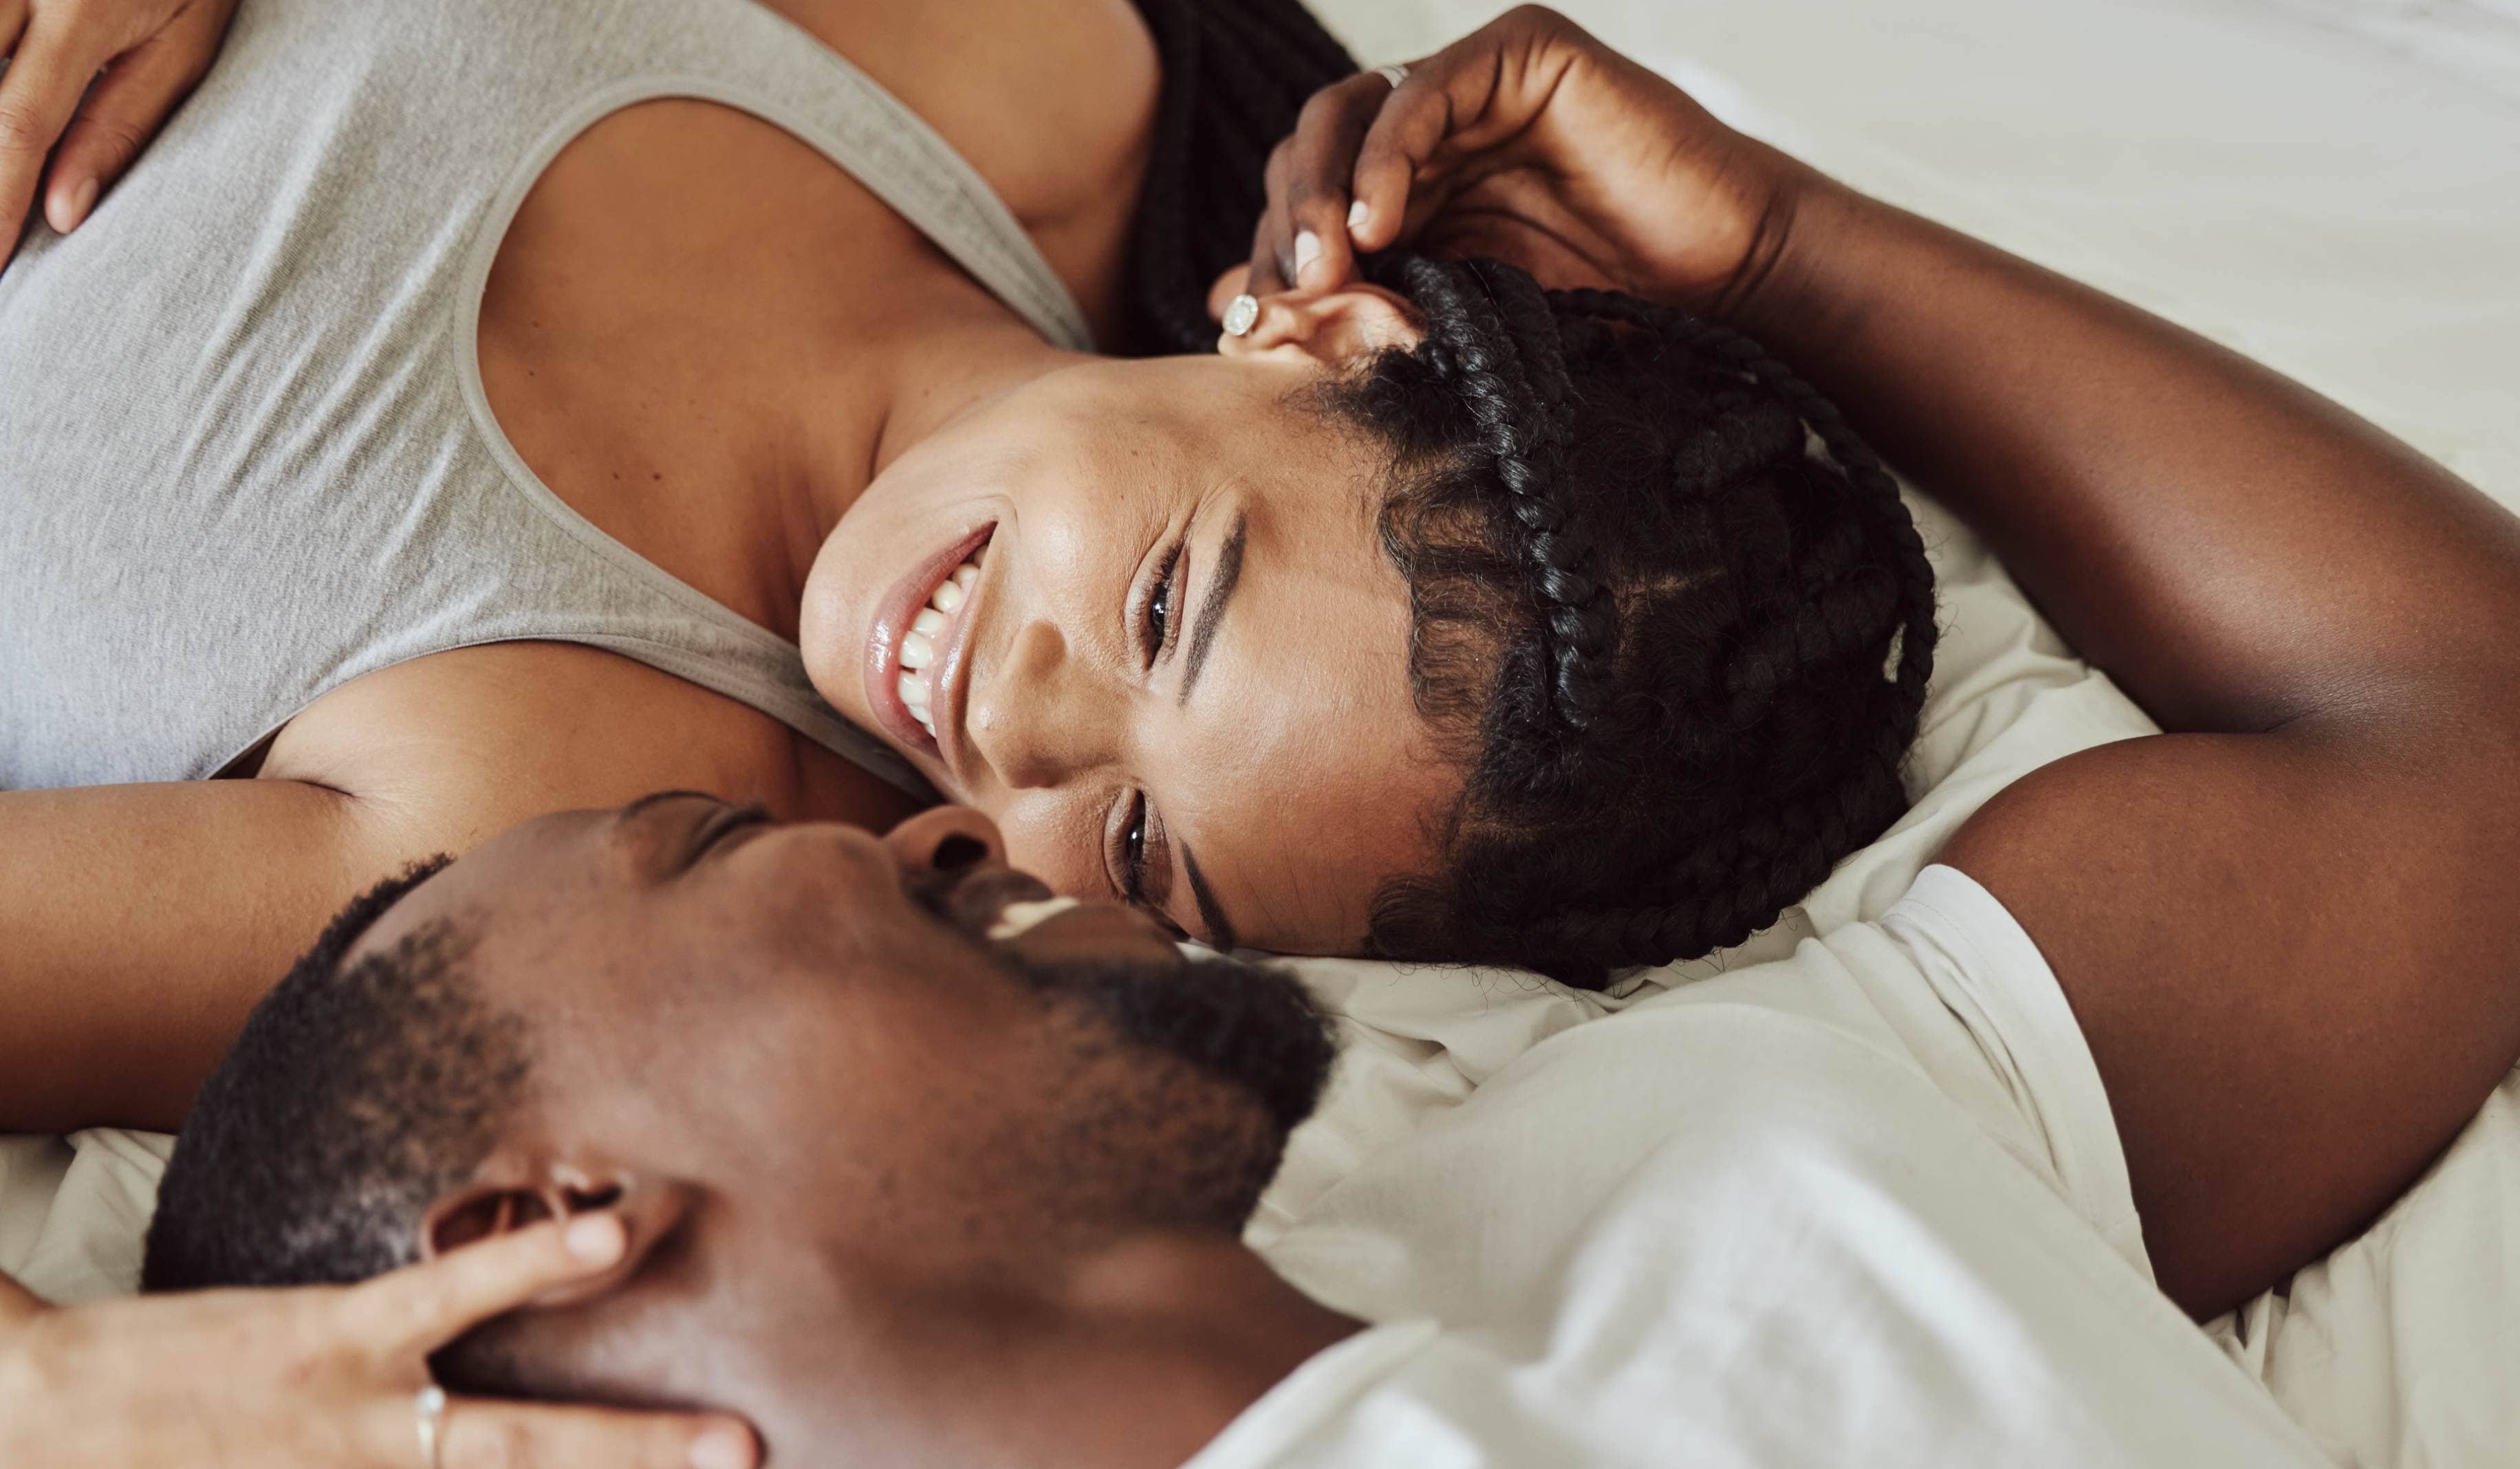 Améliorer ses sensations durant une relation sexuelle | CLEM | Suresnes